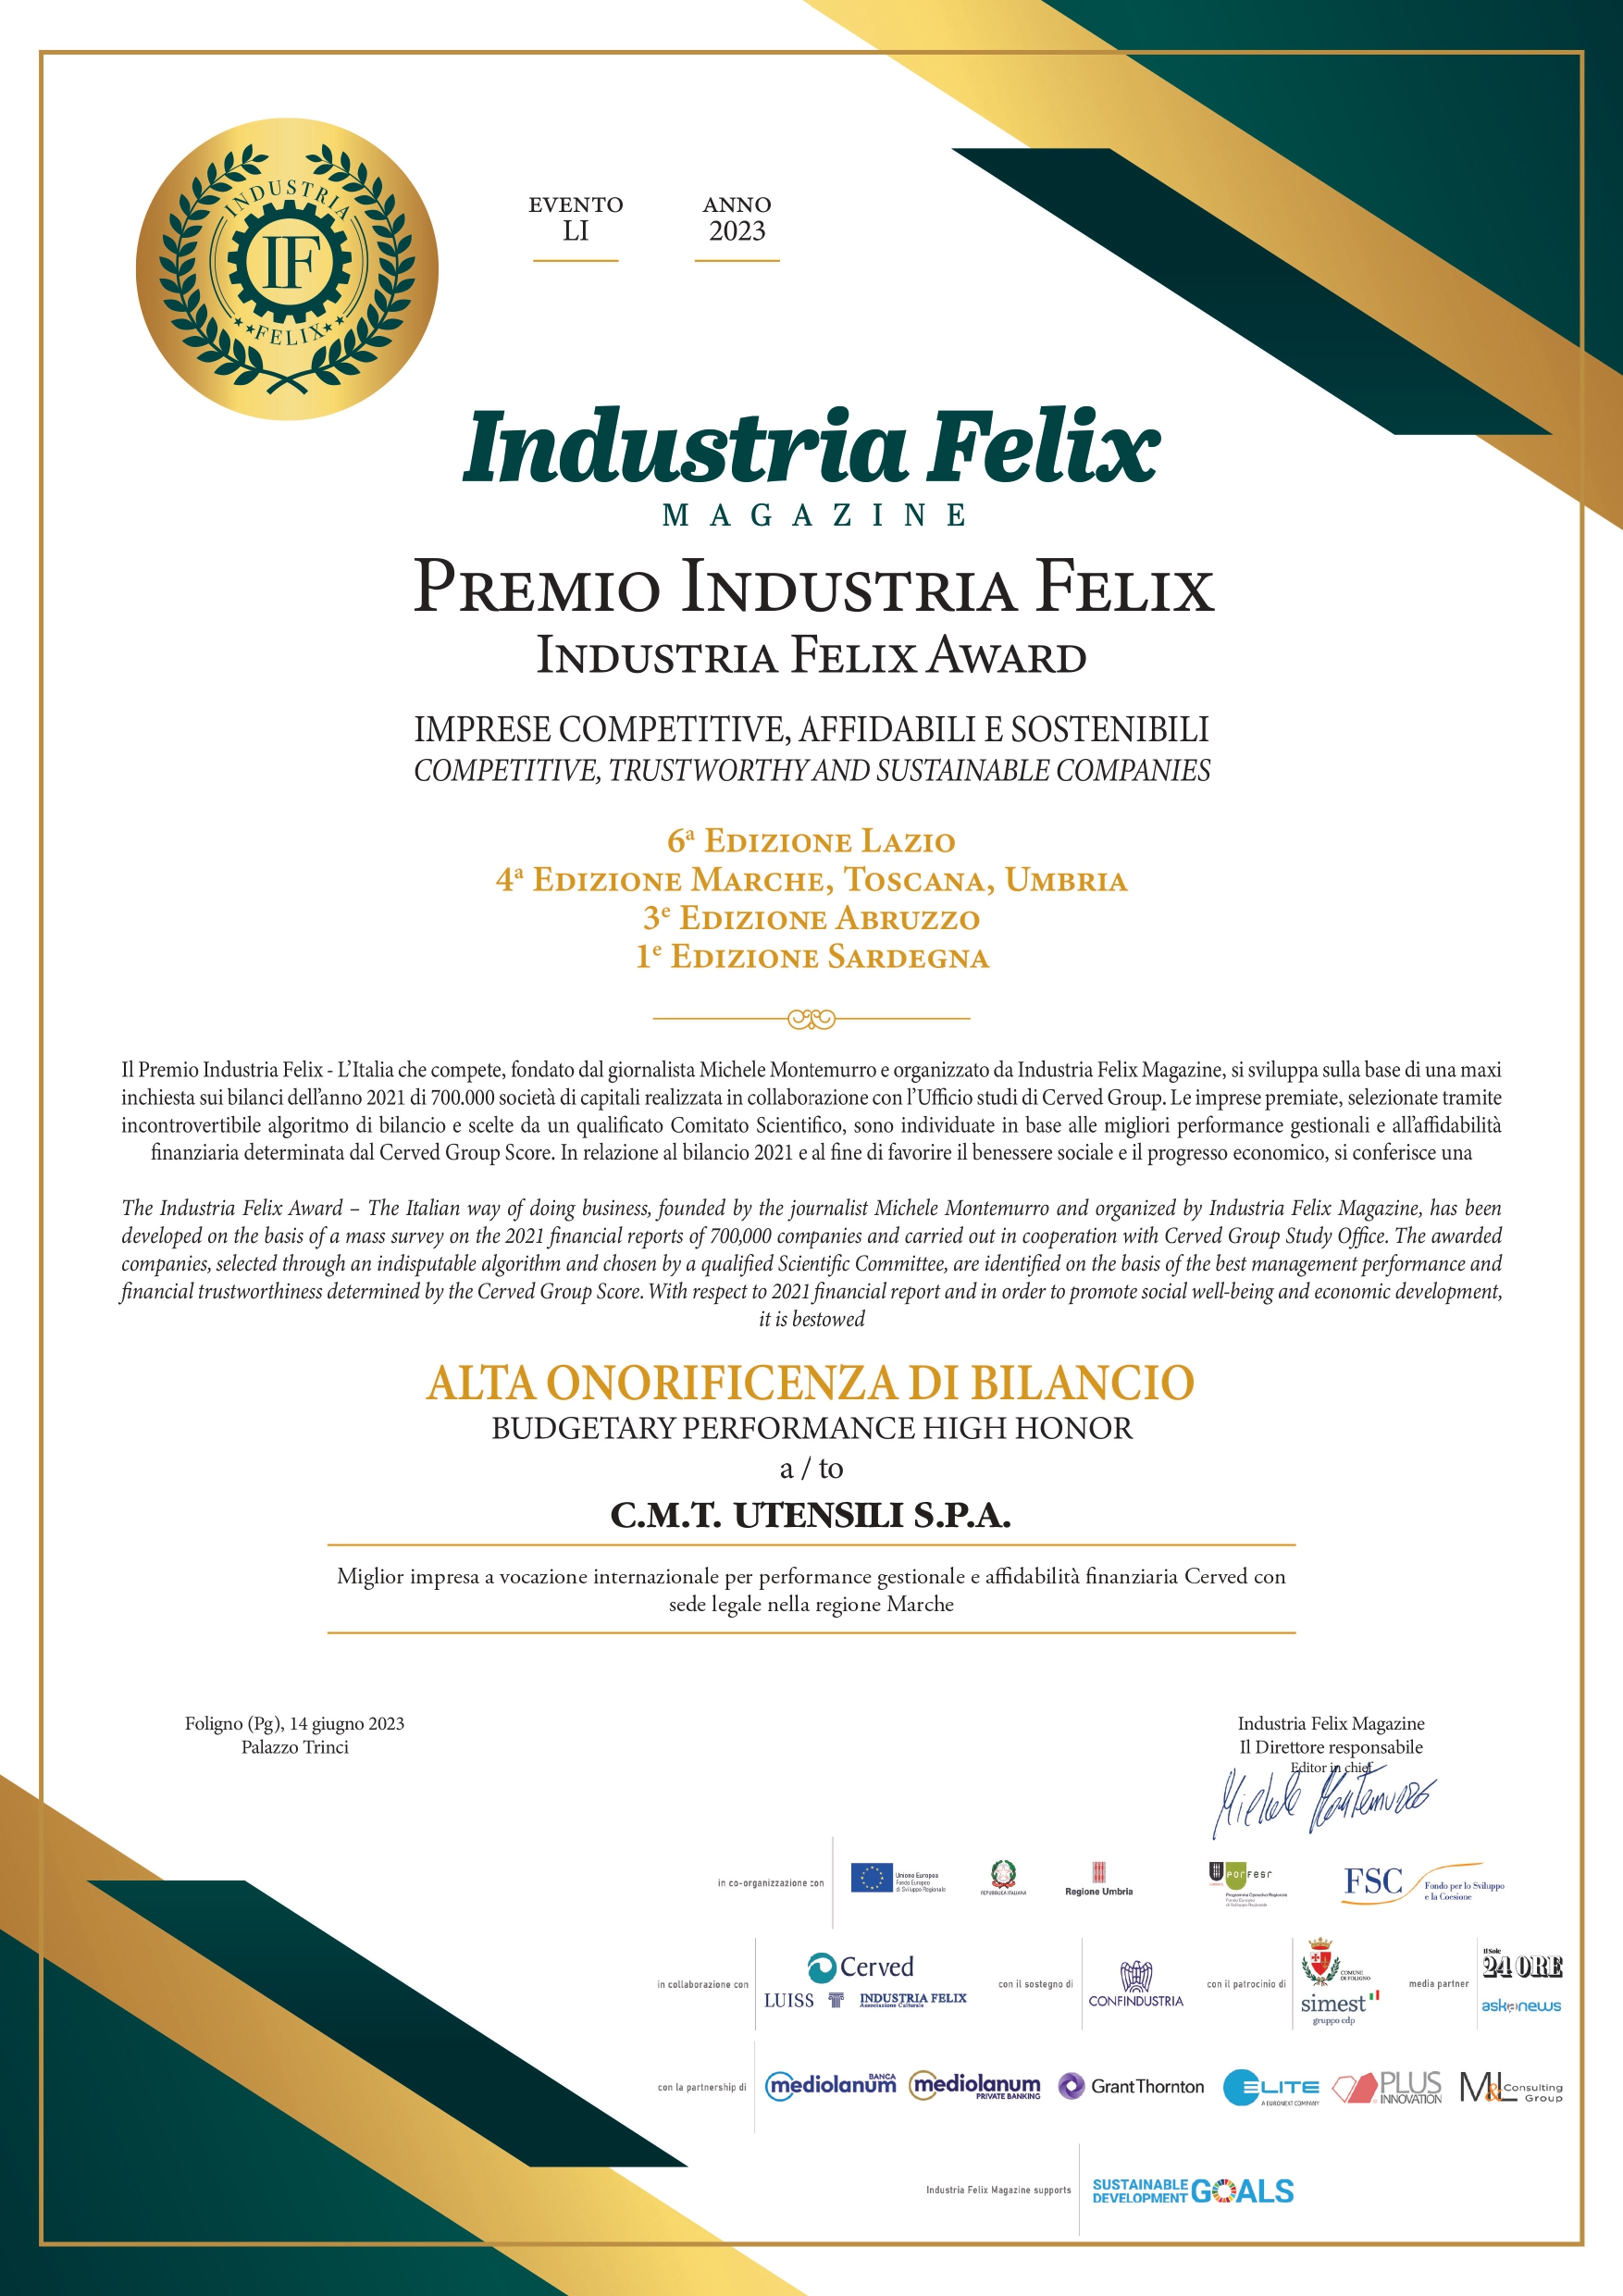 Attestato a C.M.T. l'Alta Onorificenza di Bilancio del Premio Industria Felix 2023